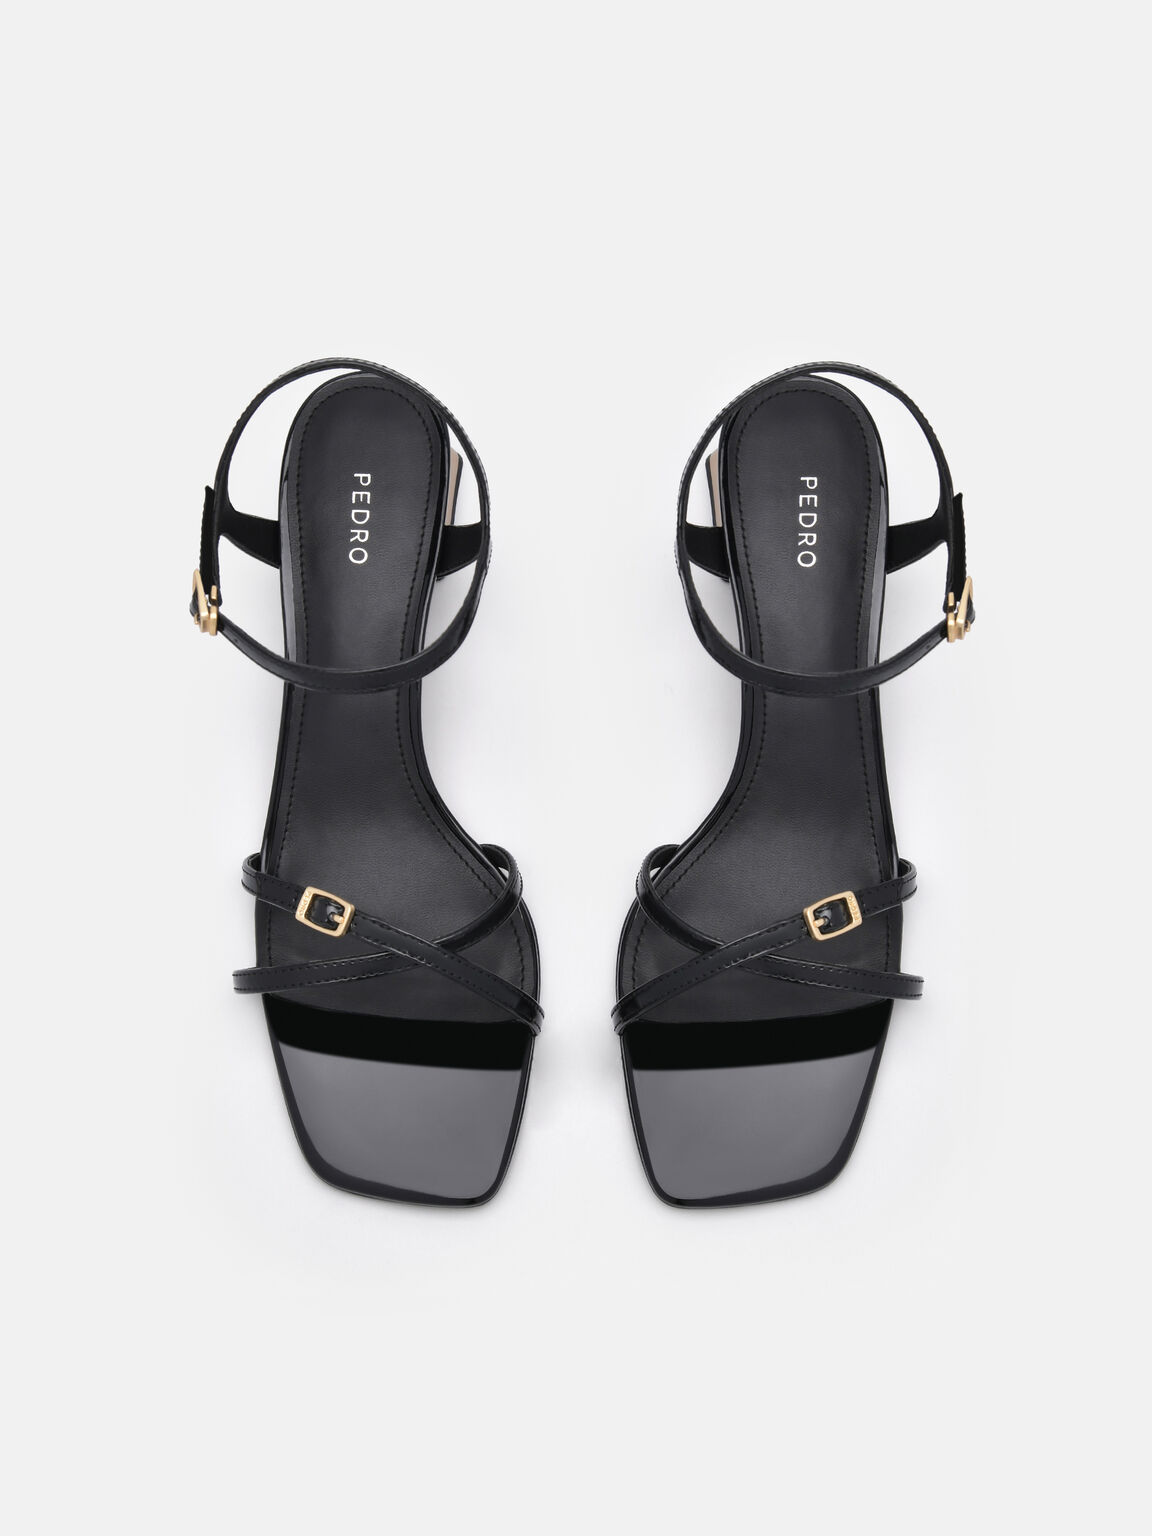 Kenzie Heel Sandals, Black